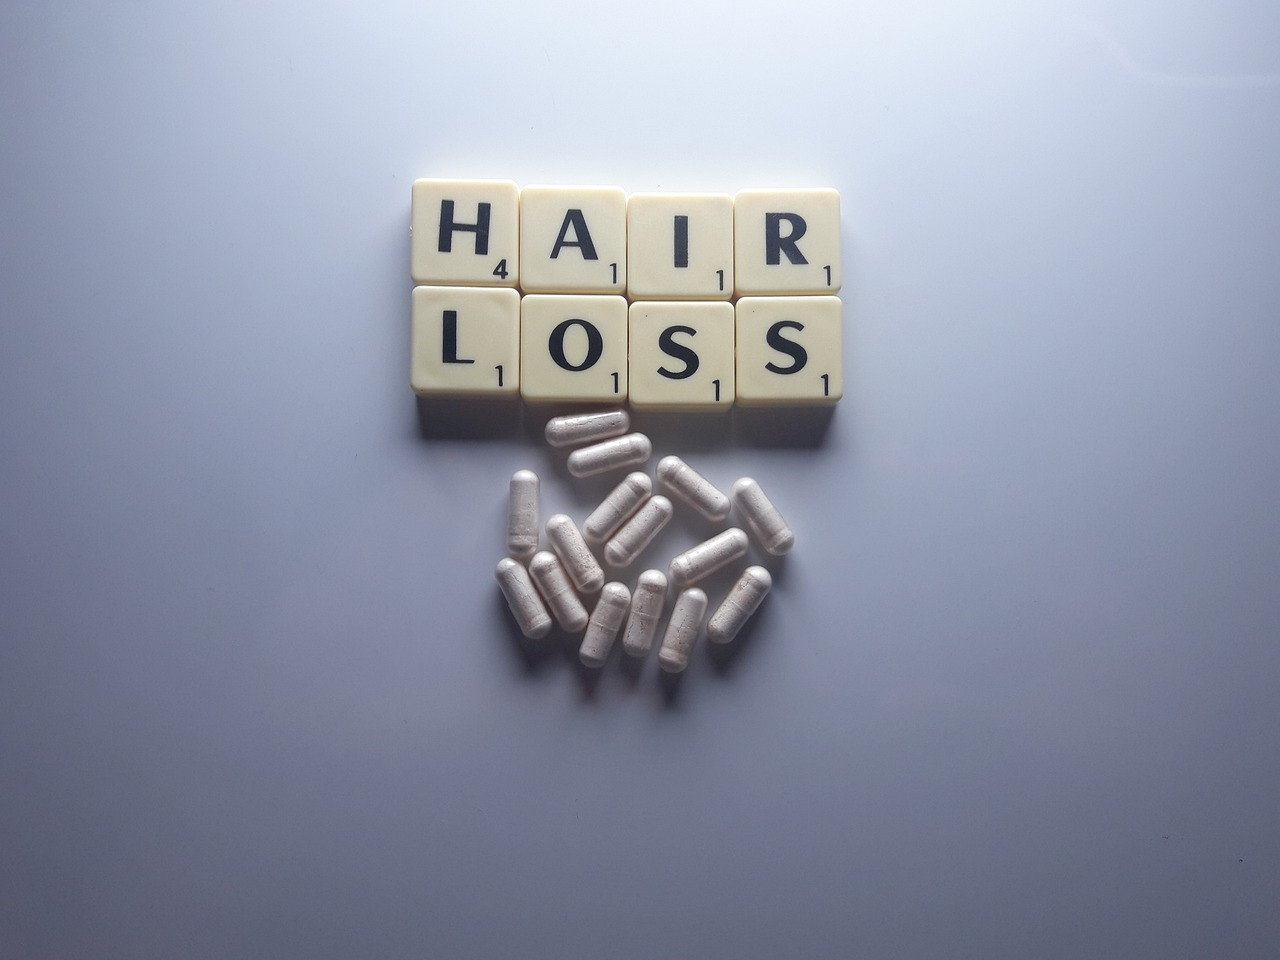 Hair loss capsules